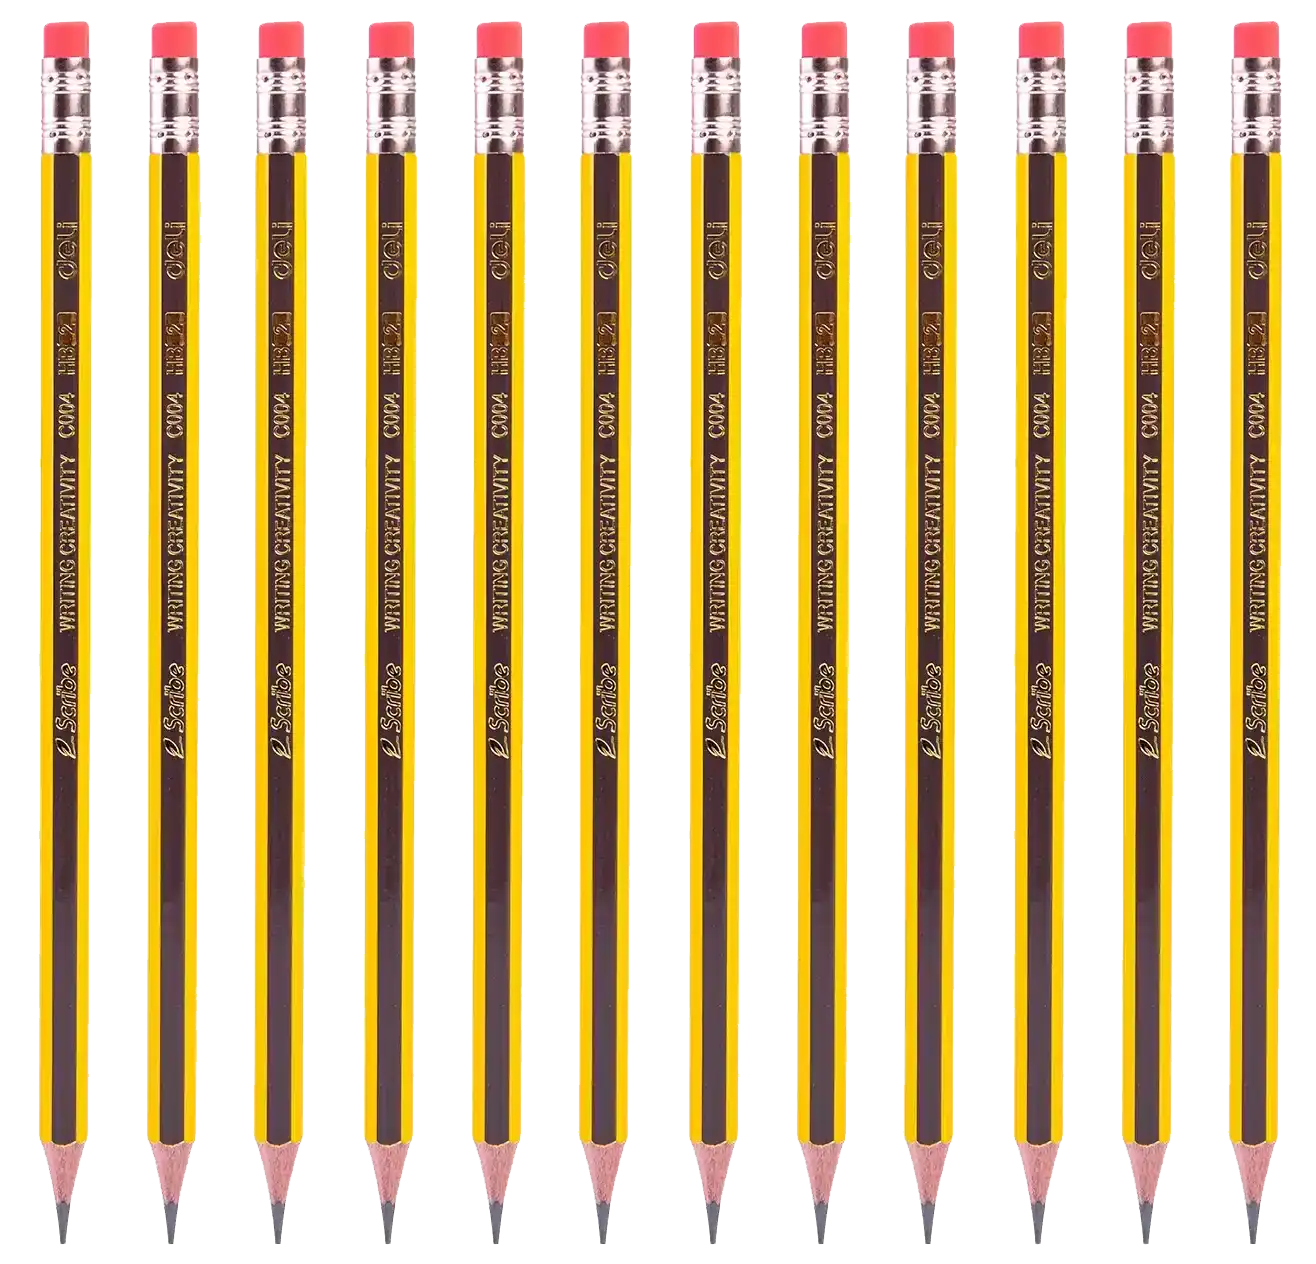 Deli 12-Piece Graphite HB Pencil Set